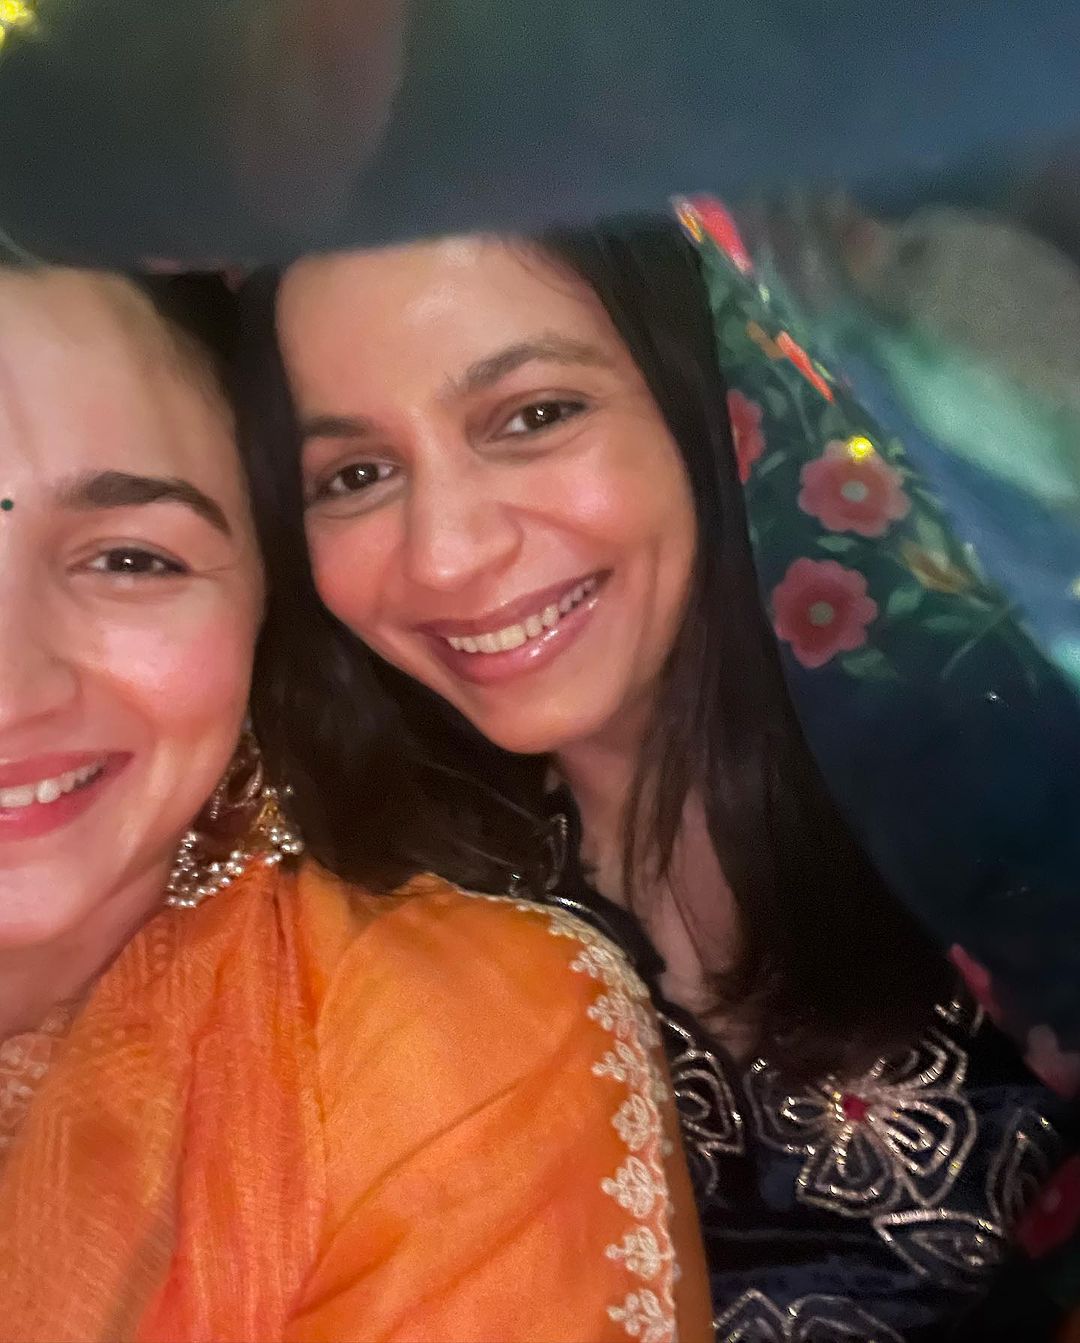 Reshma R Nair - ✨𝑩𝒓𝒊𝒏𝒈 𝑶𝒖𝒕 𝒕𝒉𝒆 𝑳𝒊𝒈𝒉𝒕 𝒊𝒏 𝒀𝒐𝒖 ..🪔 Diwali...  | Facebook